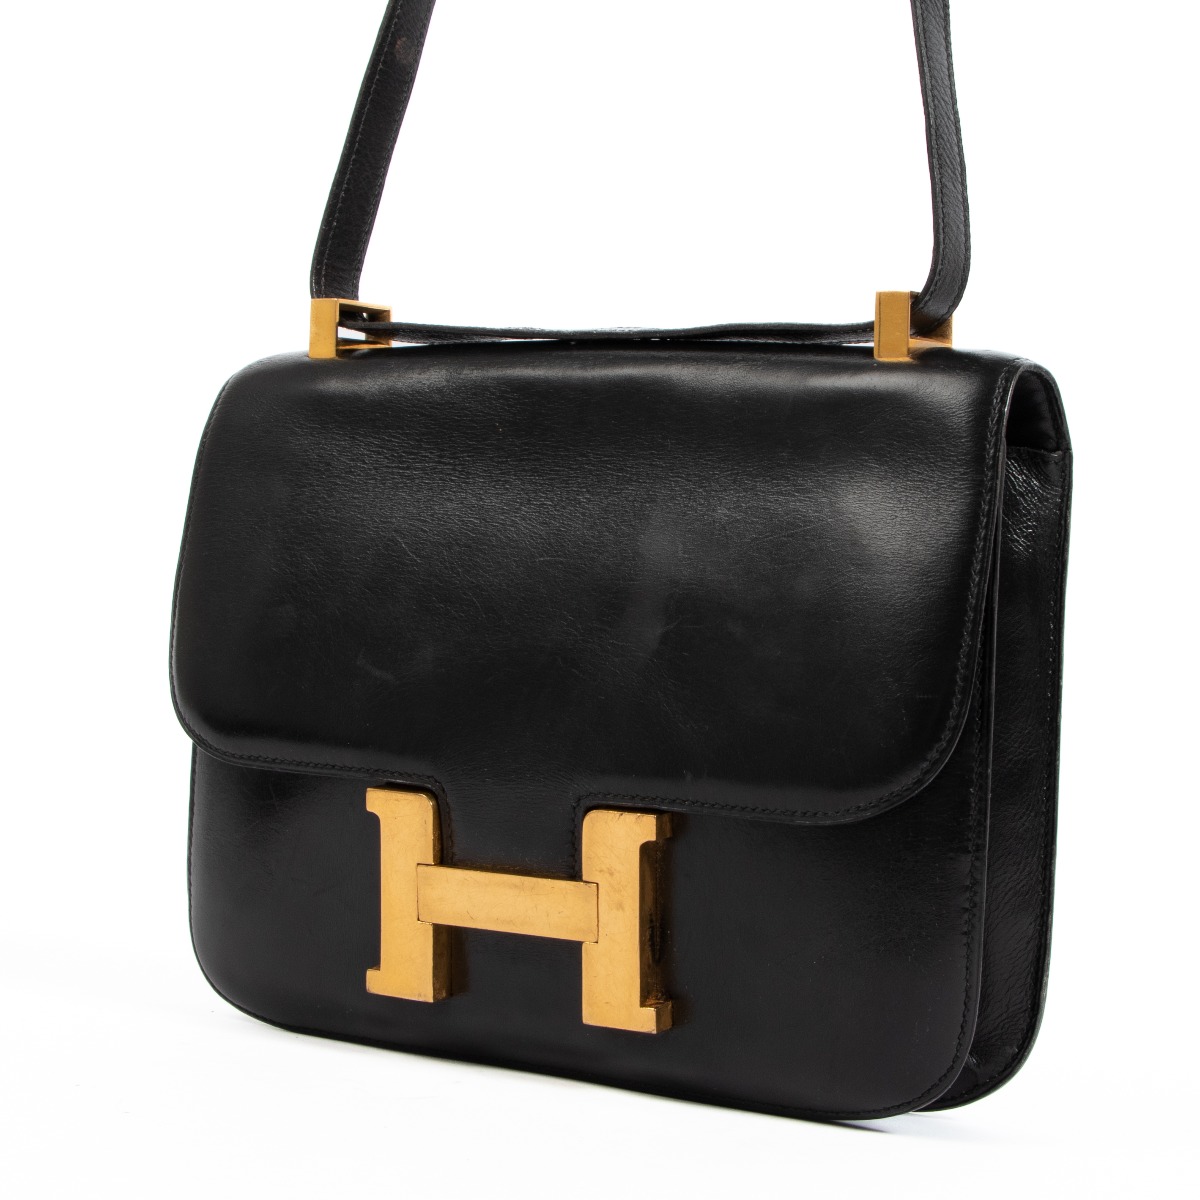 Gloss Vintage & Luxury Bag Ltd on Instagram: Hermes Kelly Danse gold  Jonathan leather ghw Z 2022 full set Hkd 138000 #hermeskellydanse  #glossvintage